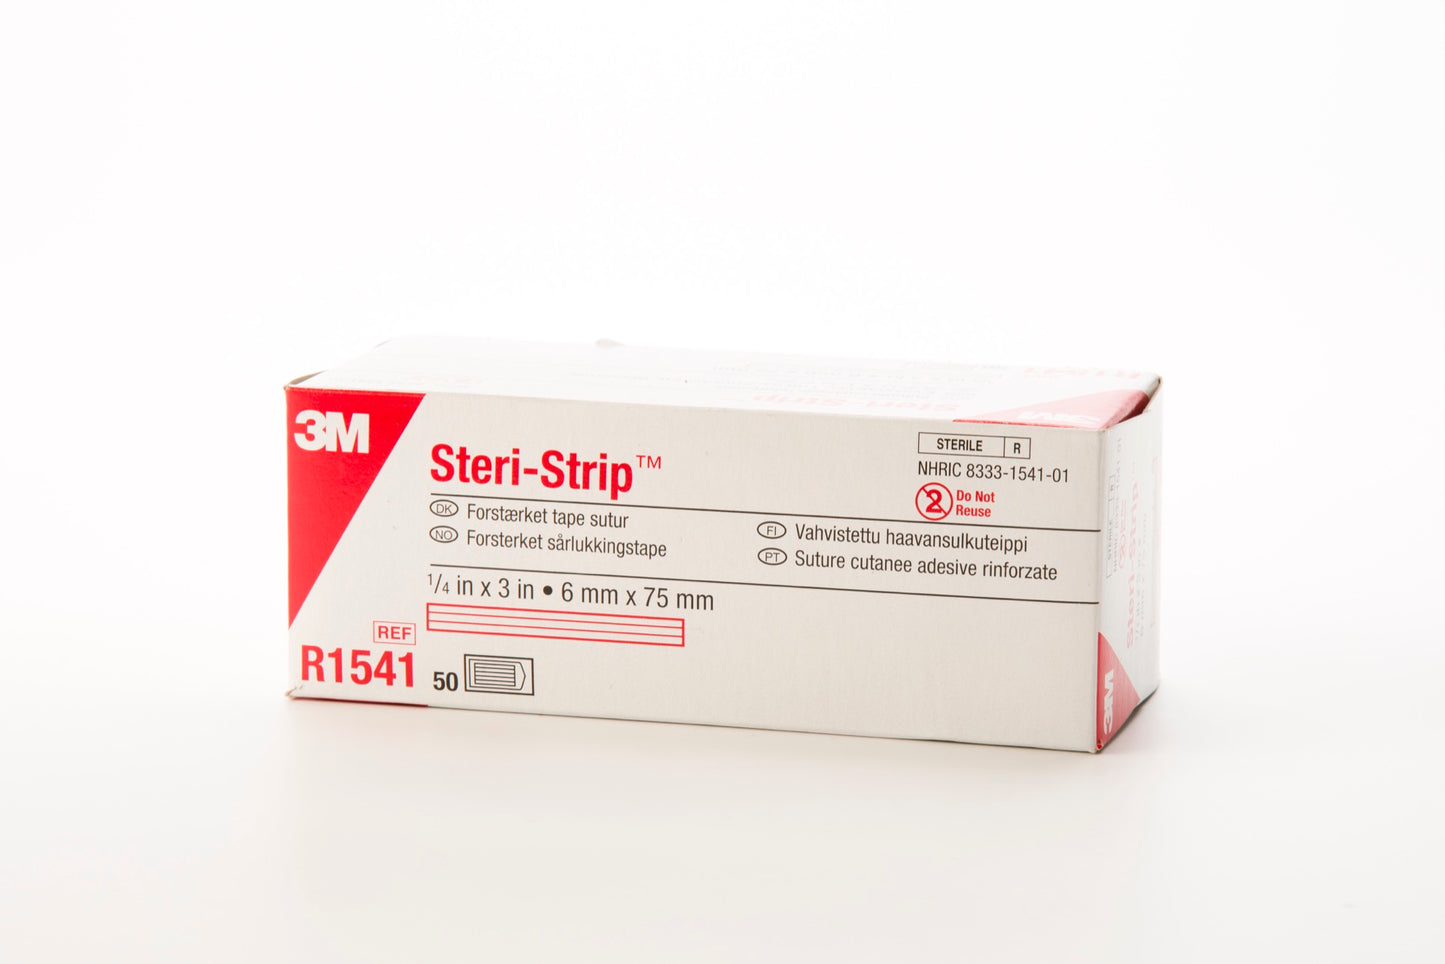 Steri-Strip 6mm x 75mm